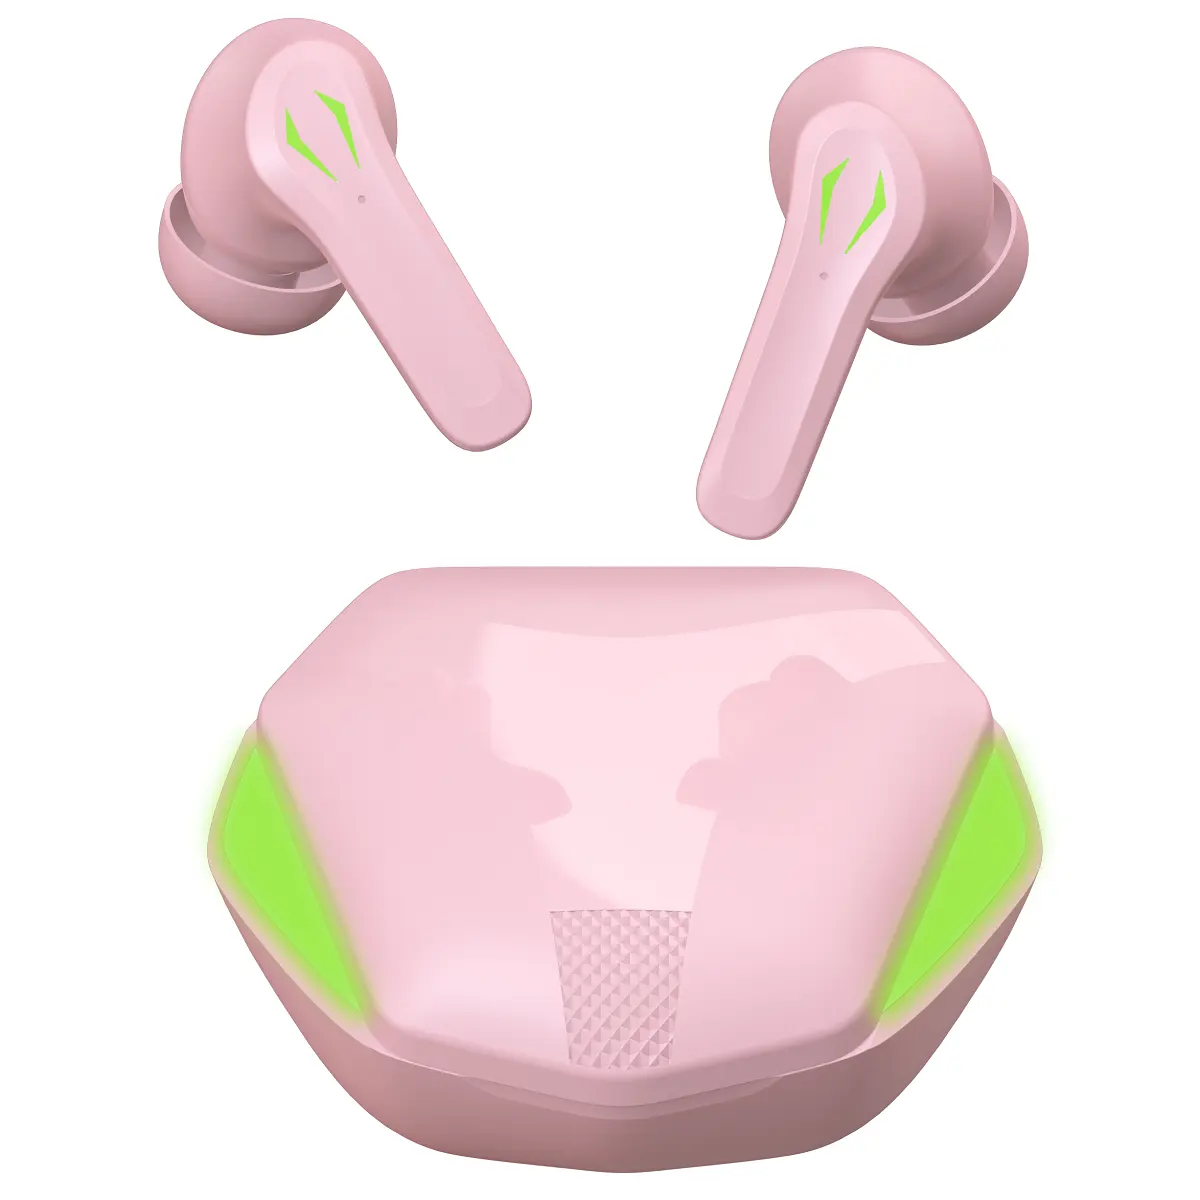 Nuovo traduttore Sport In-Ear cuffie da gioco auricolari Bluetooth auricolare Tws fredda respirazione luci LED auricolari senza fili Bluetooth